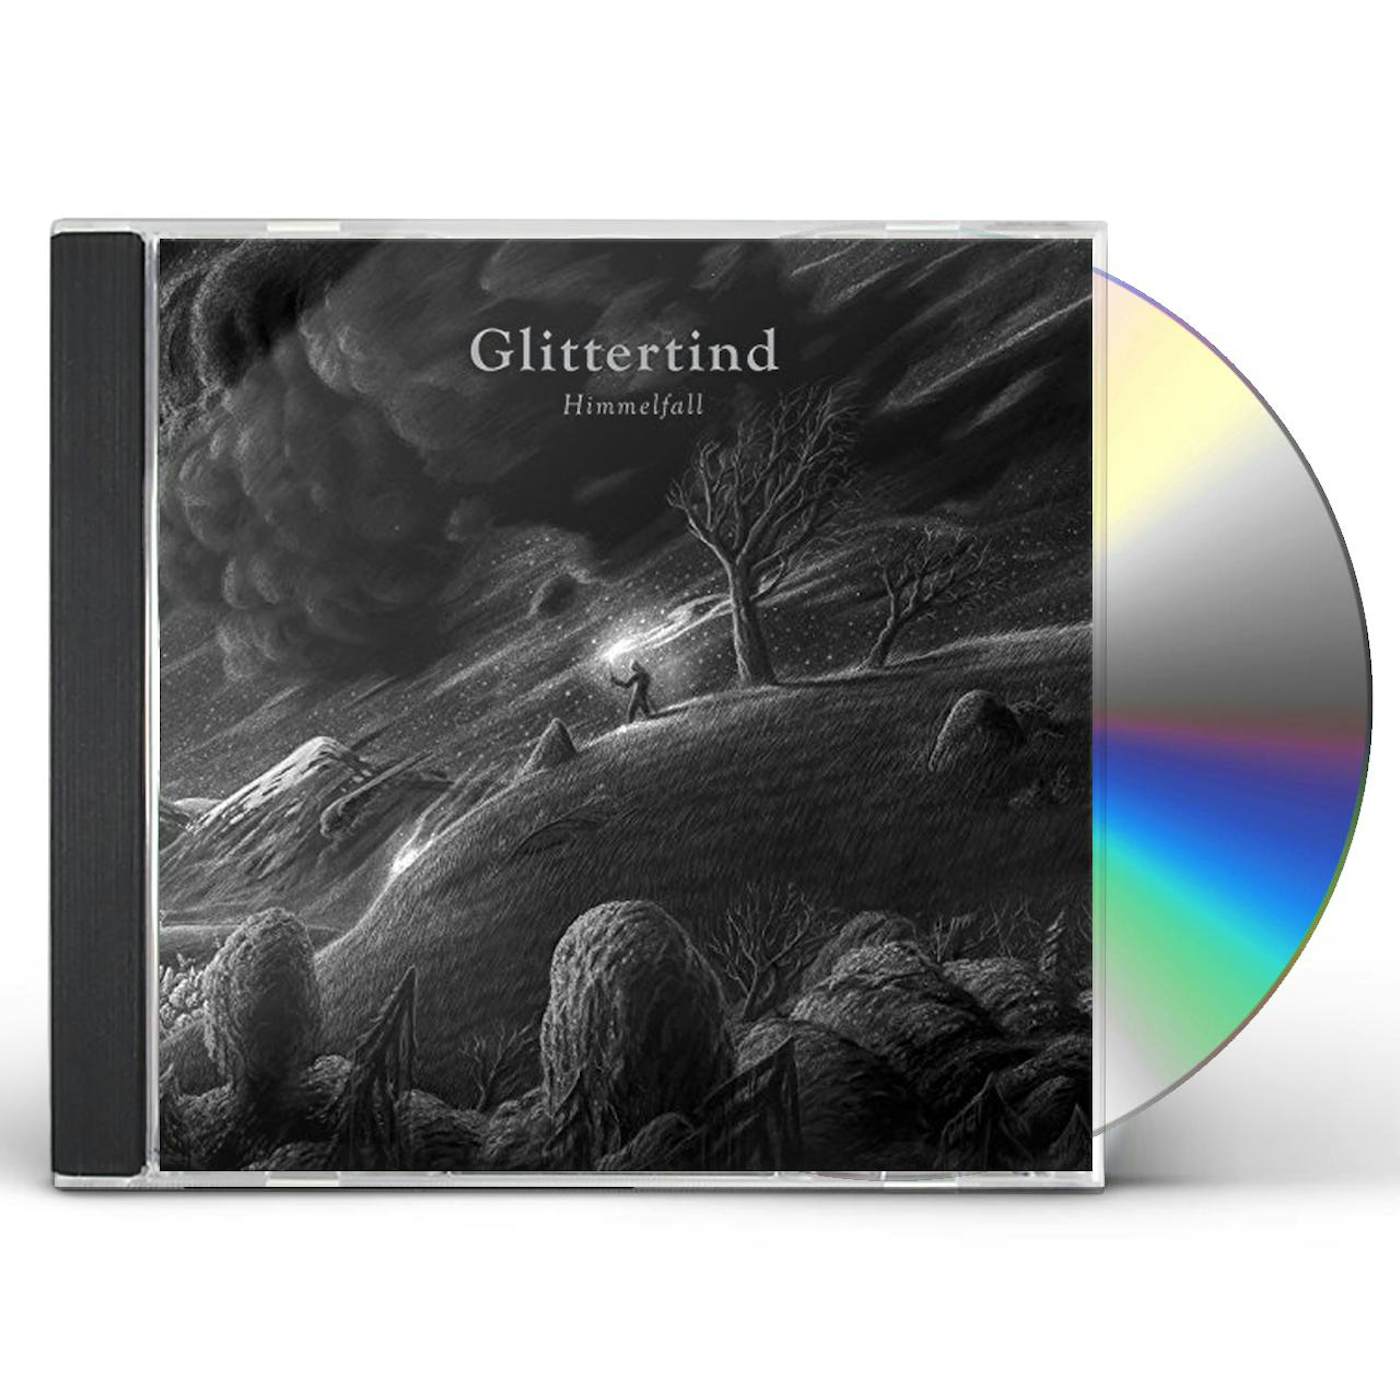 Glittertind HIMMELFALL CD